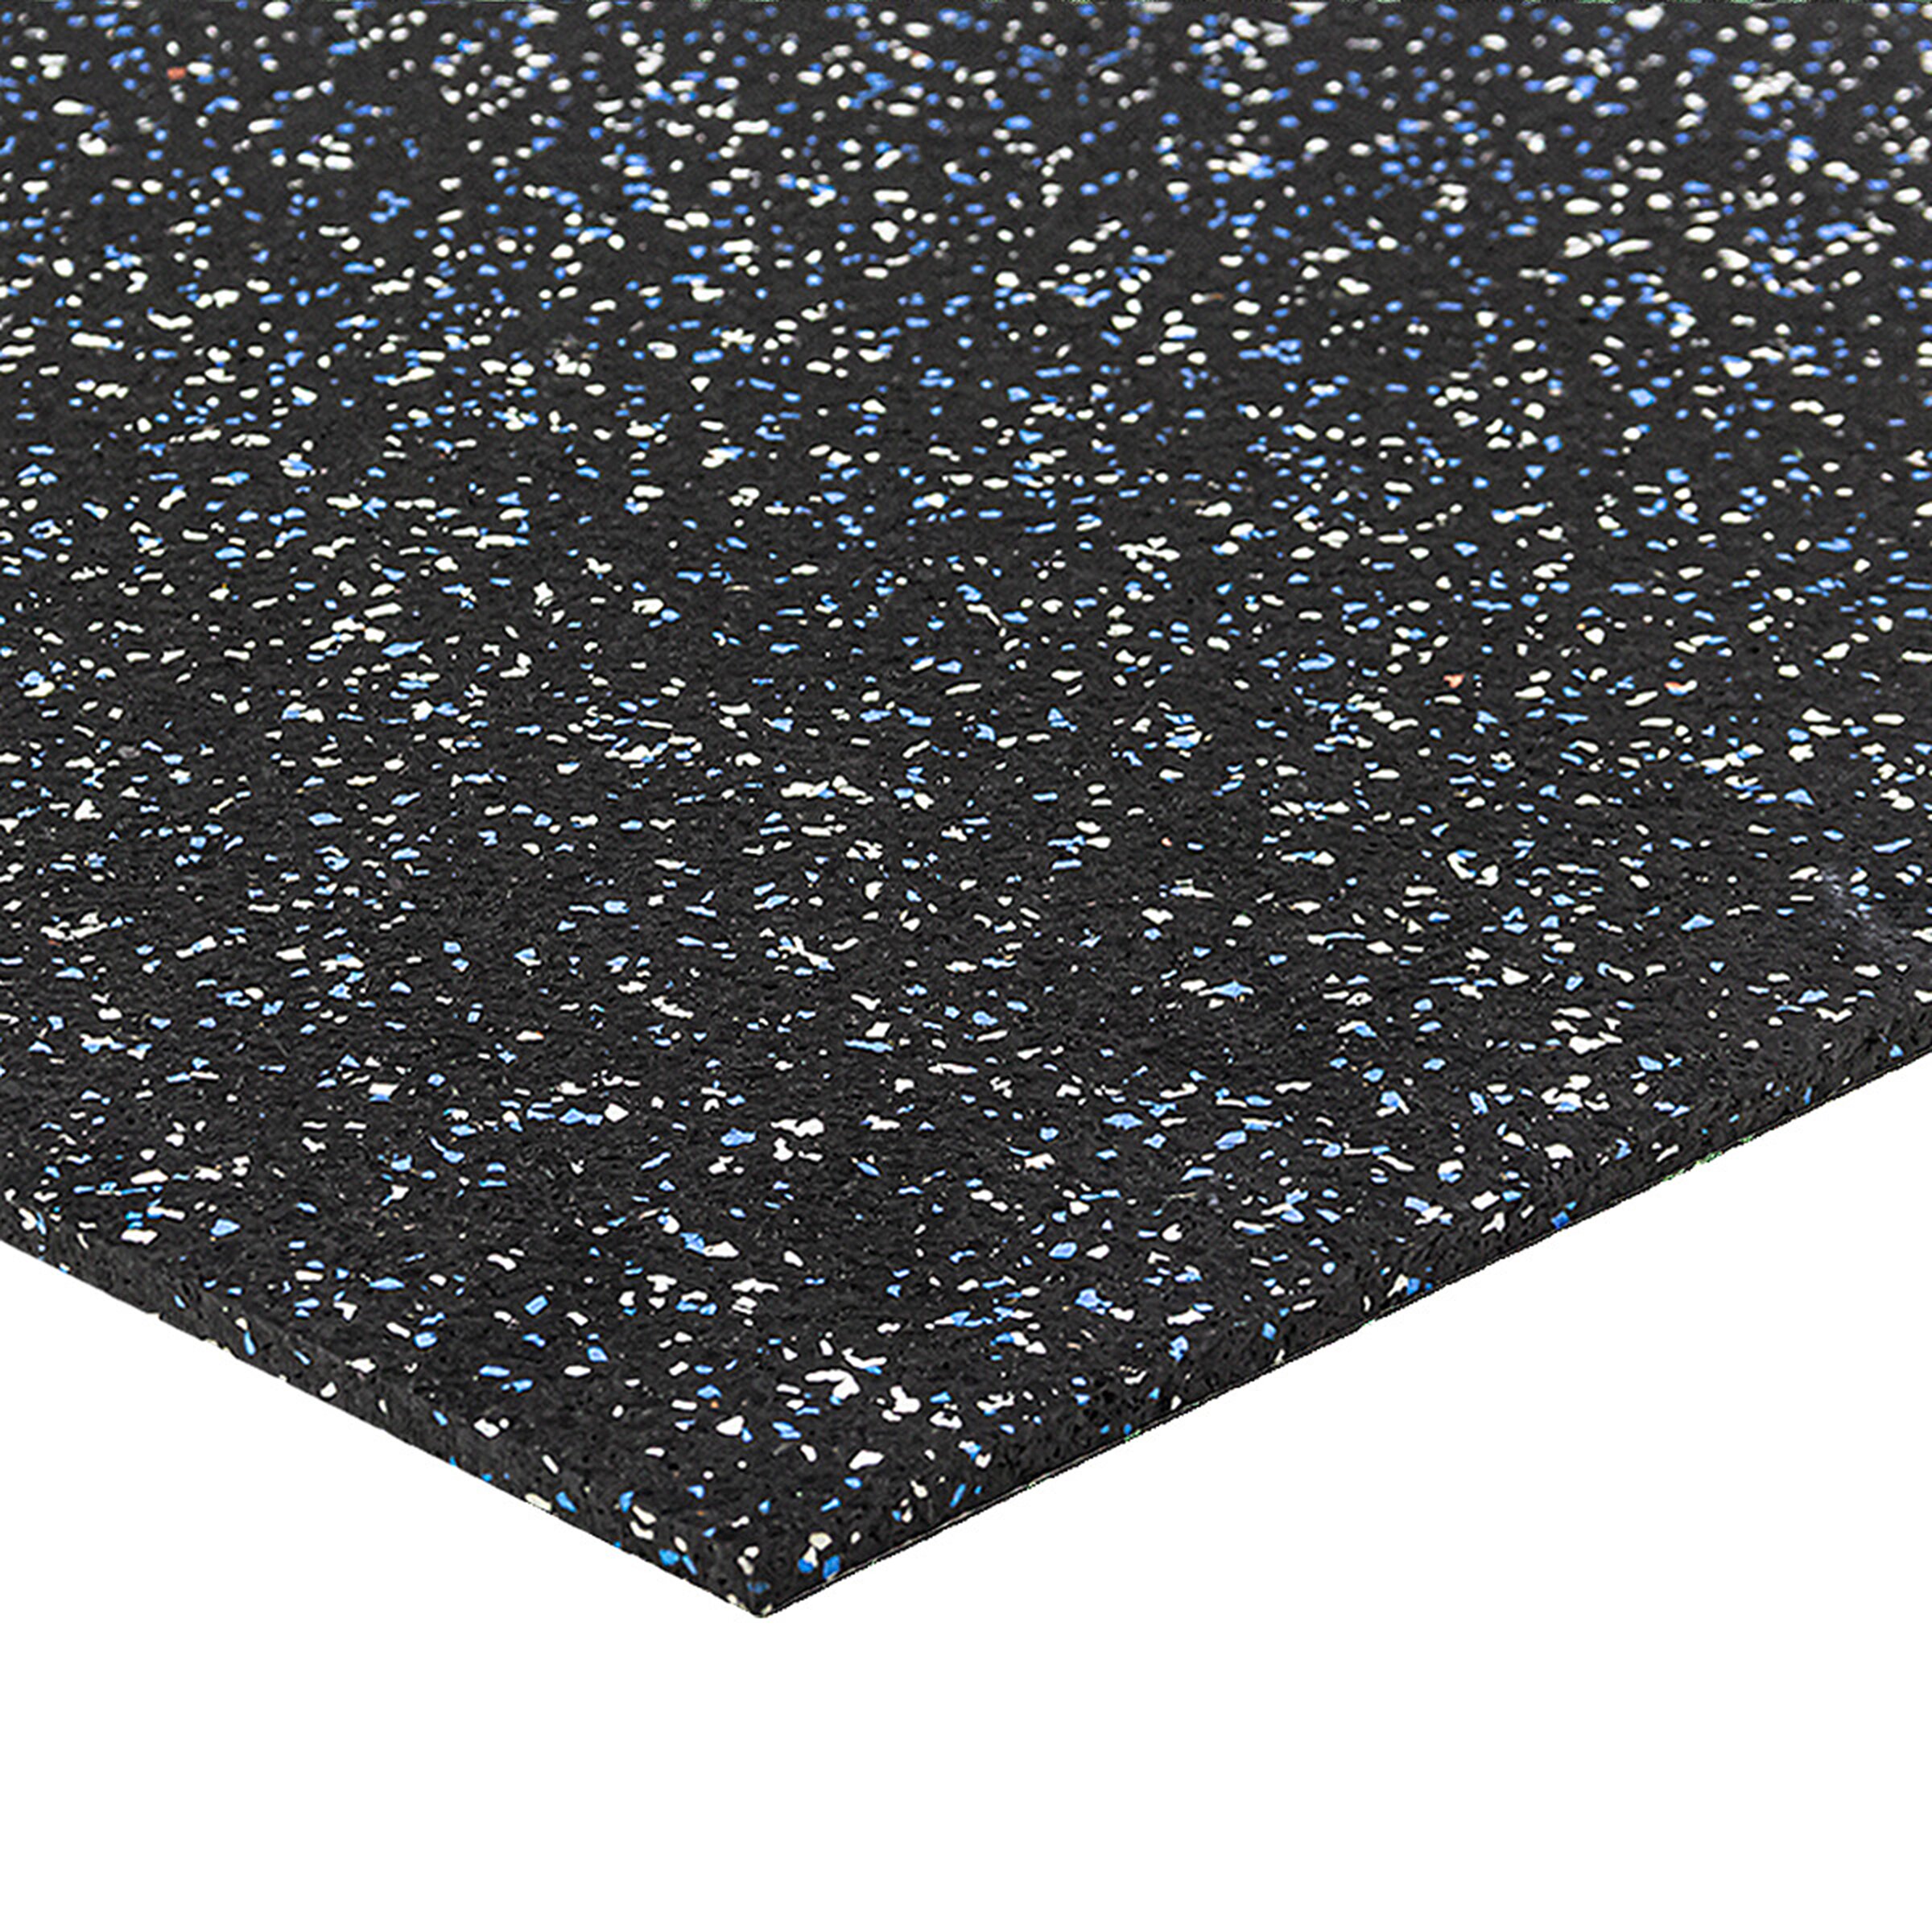 Černo-bílo-modrá podlahová guma (puzzle - roh) FLOMA FitFlo SF1050 - délka 100 cm, šířka 100 cm, výška 0,8 cm